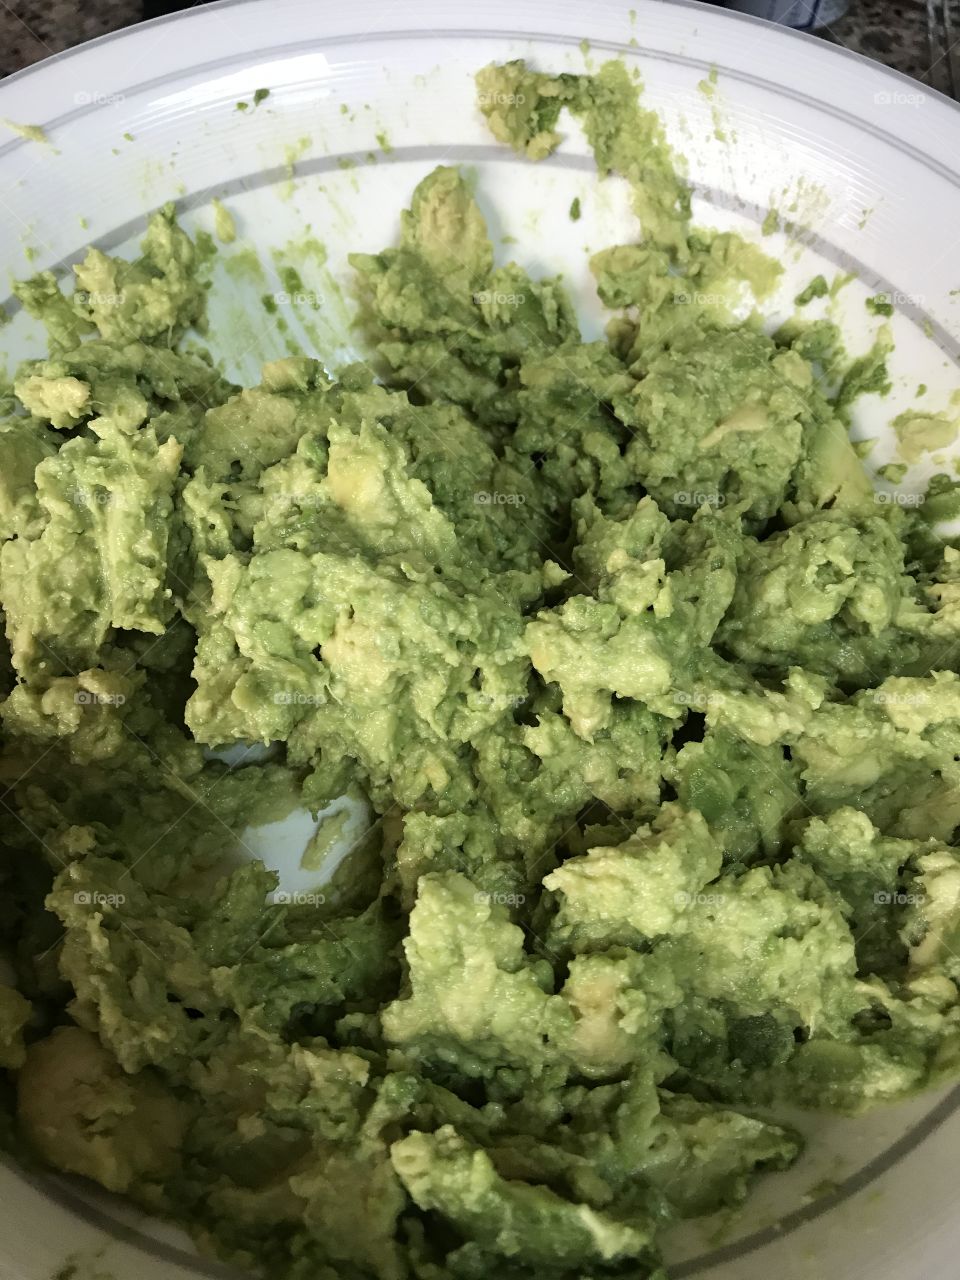 Making guacamole 